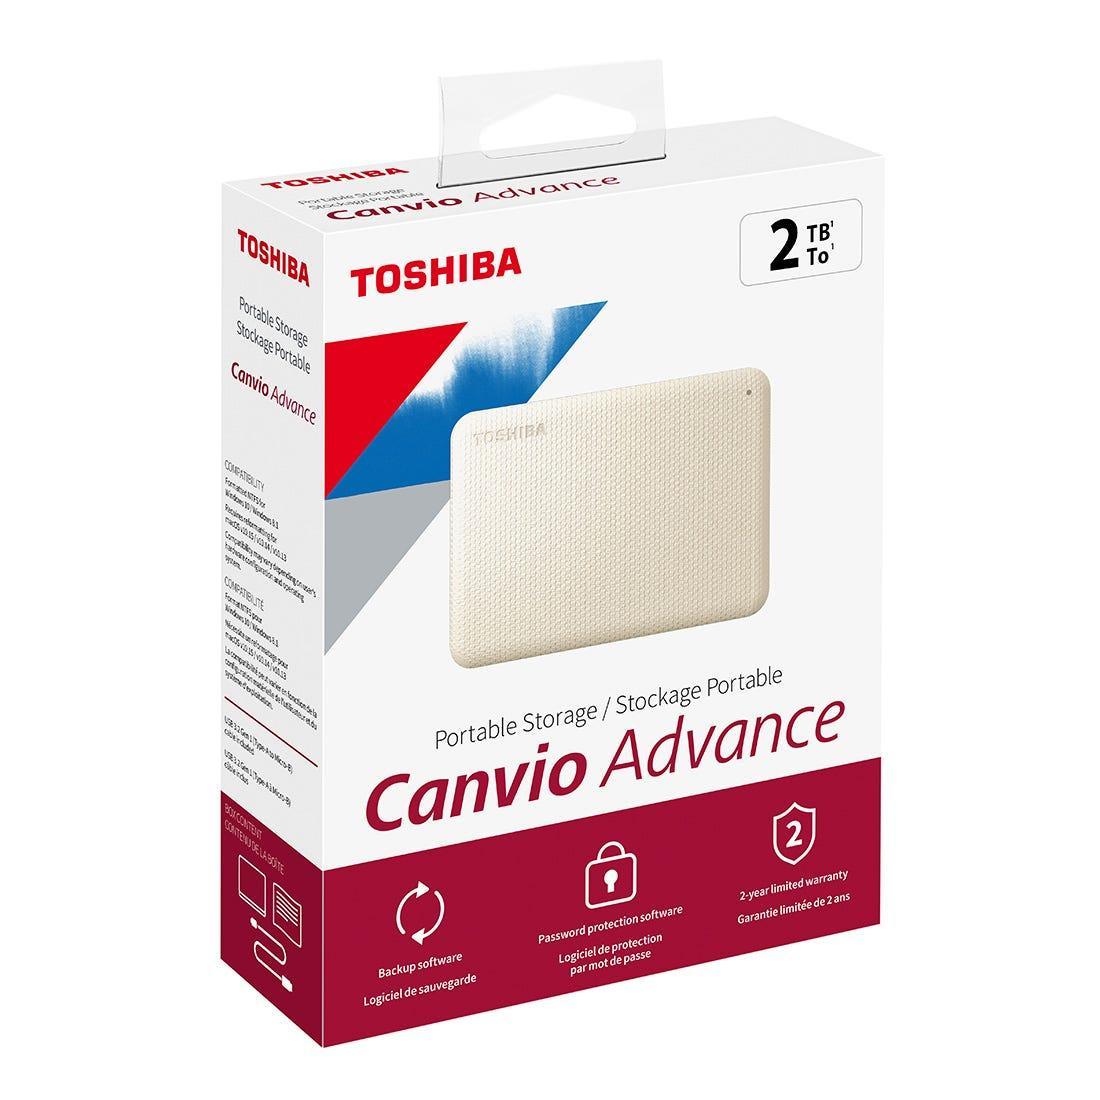 HD Externo Toshiba 2TB Canvio Advance Branco - HDTCA20XW3AA I - Mega Market